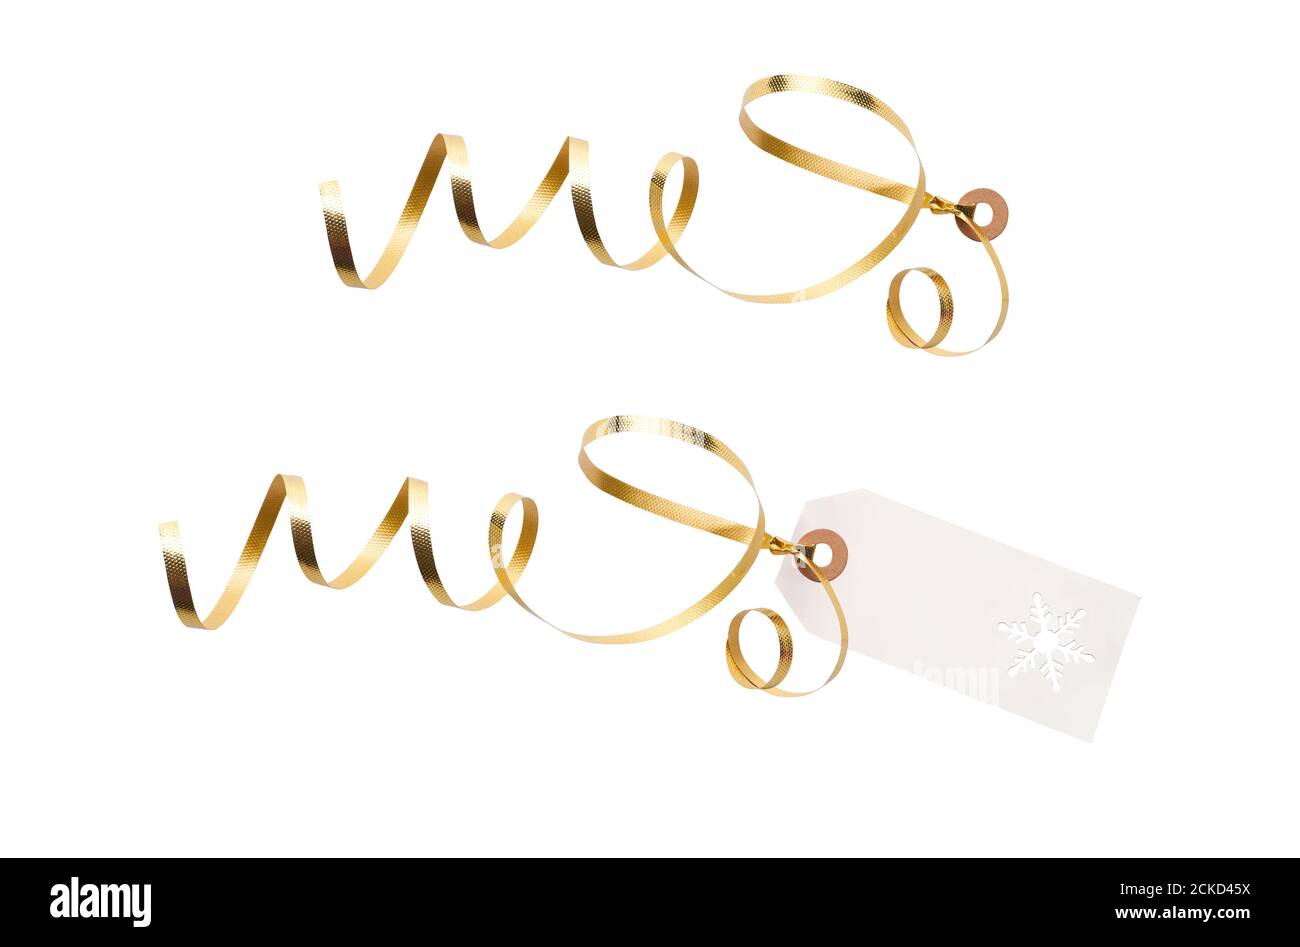 Tag regalo e modello di etichetta con nastro d'oro attaccato per aggiungere a regali, regali di Natale o compleanno isolato su uno sfondo bianco. Foto Stock